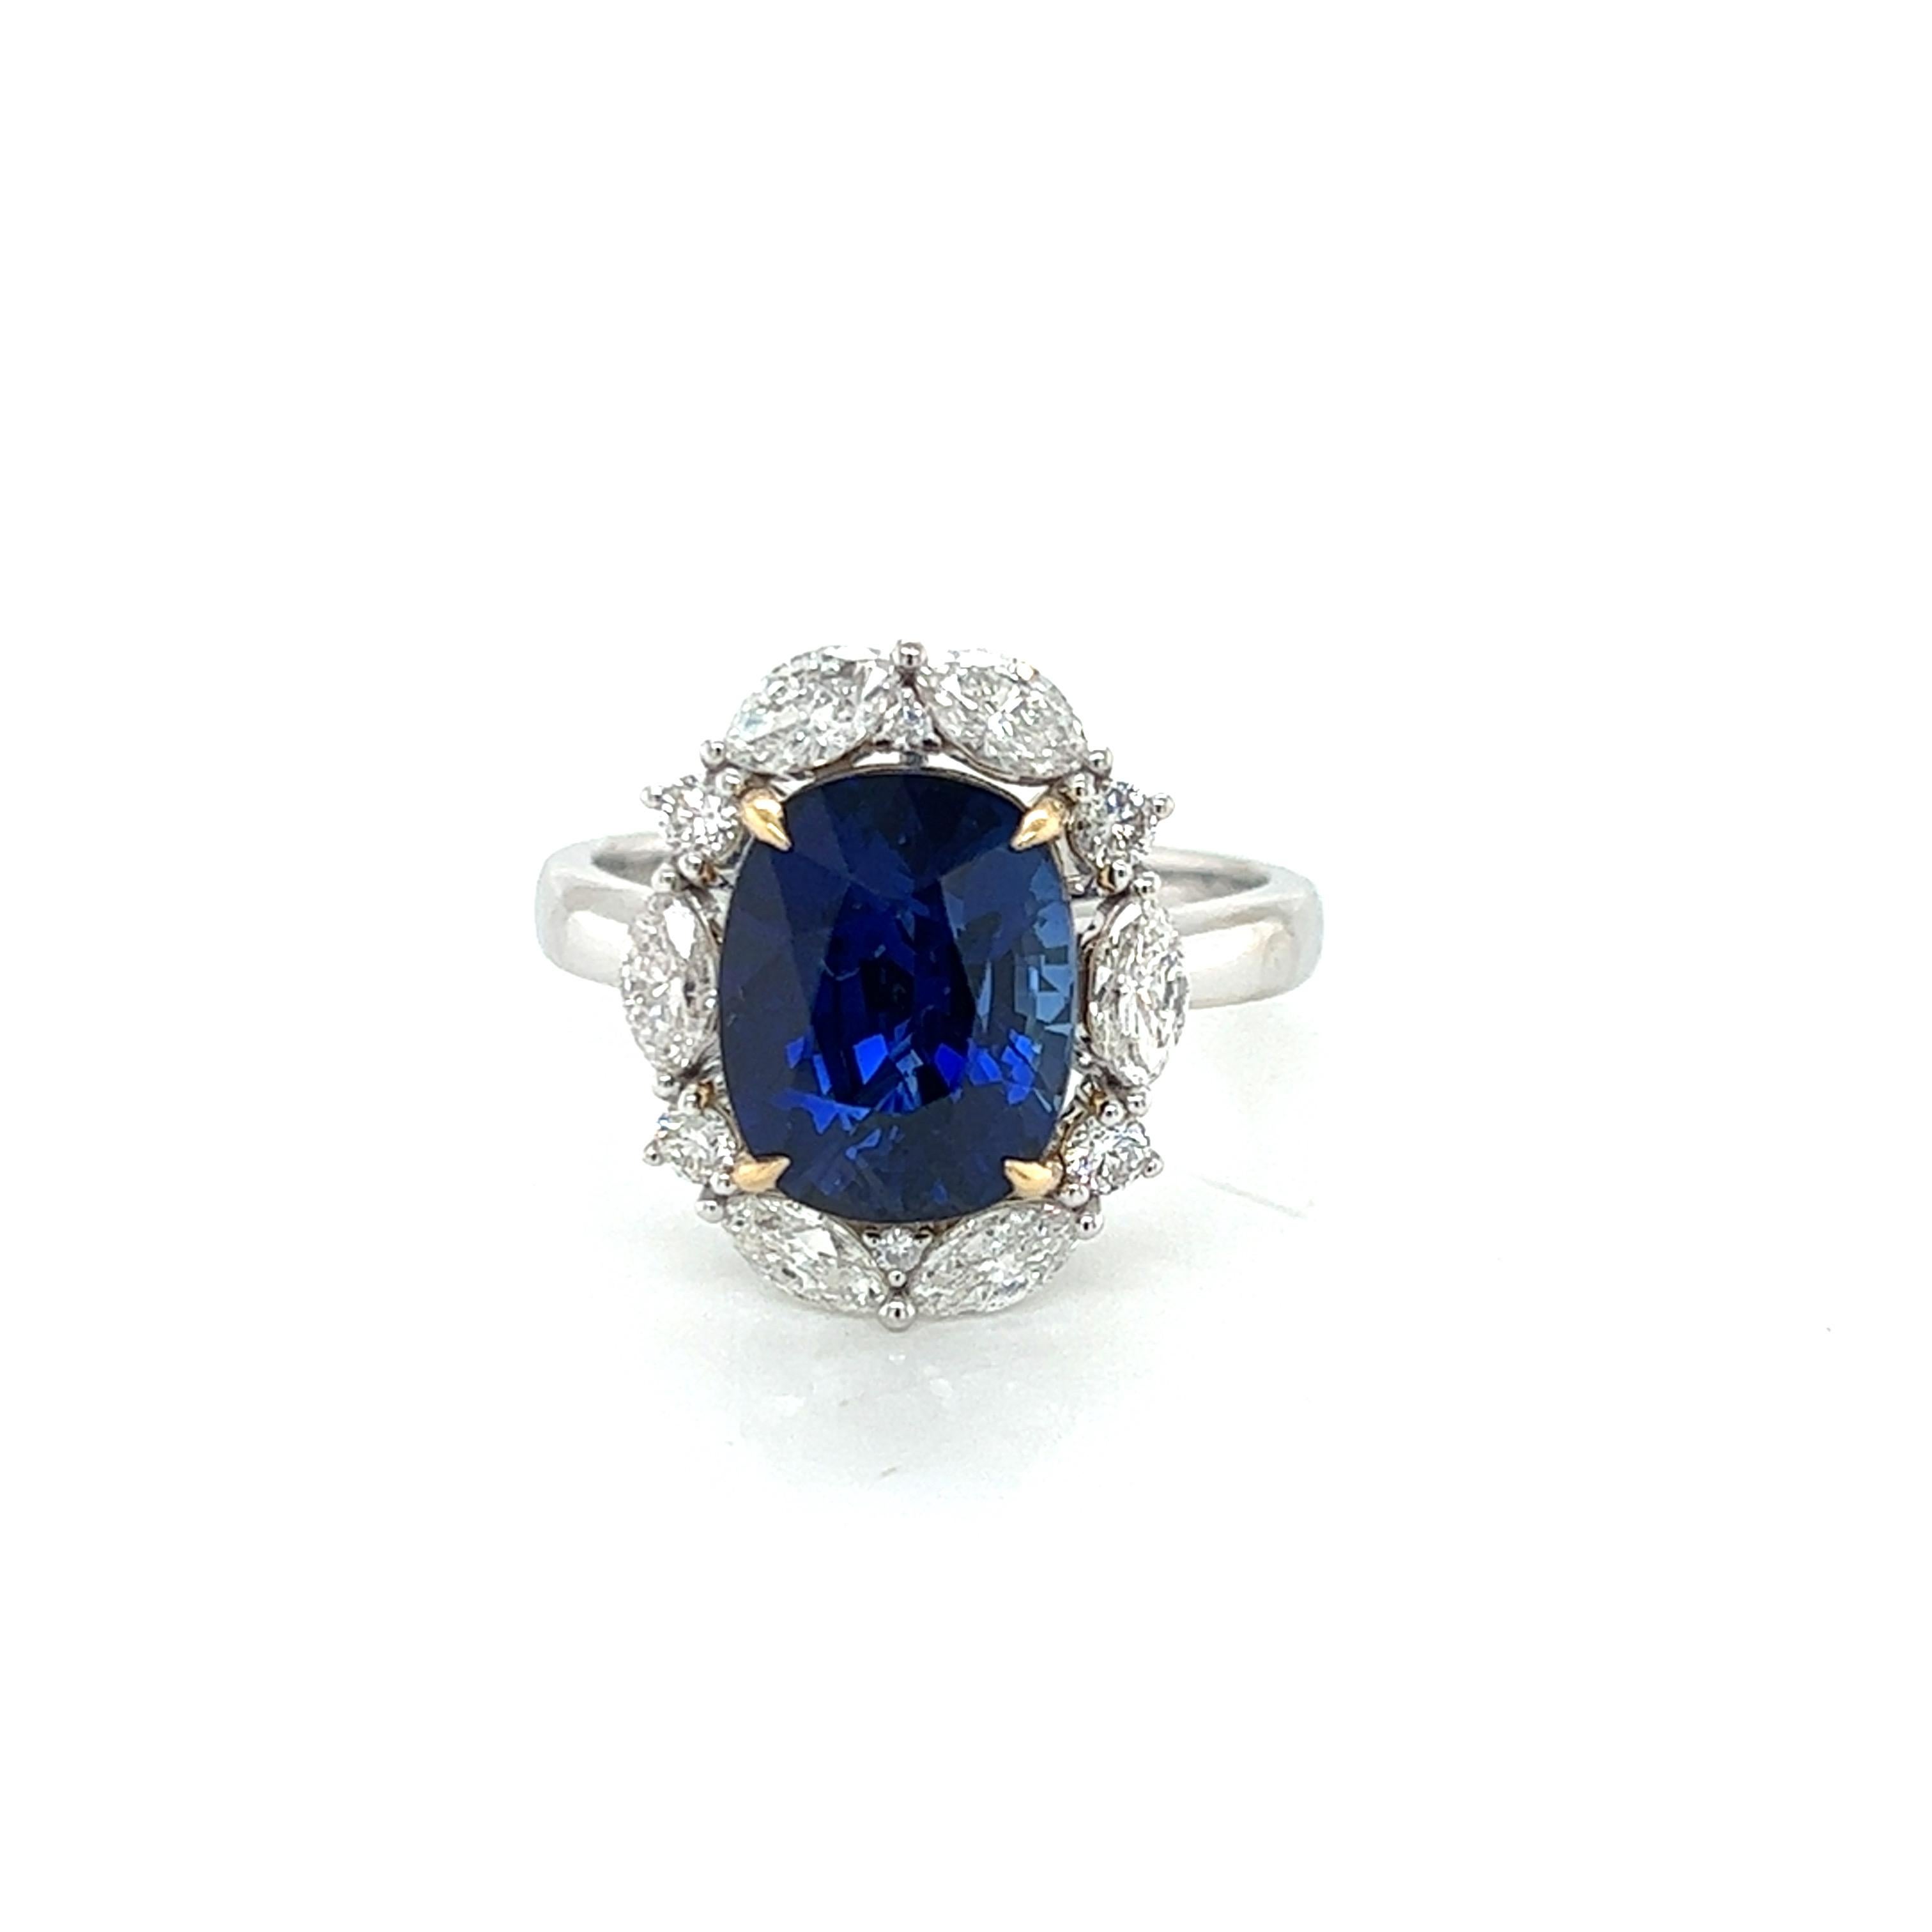 Der atemberaubende Ring mit 6 Karat blauem Saphir und Diamant im Marquise-Format ist ein wahrhaft exquisites Schmuckstück, das Luxus und Raffinesse verkörpert. Dieser Ring besticht durch einen blauen Saphir im länglichen Kissenschliff mit einem